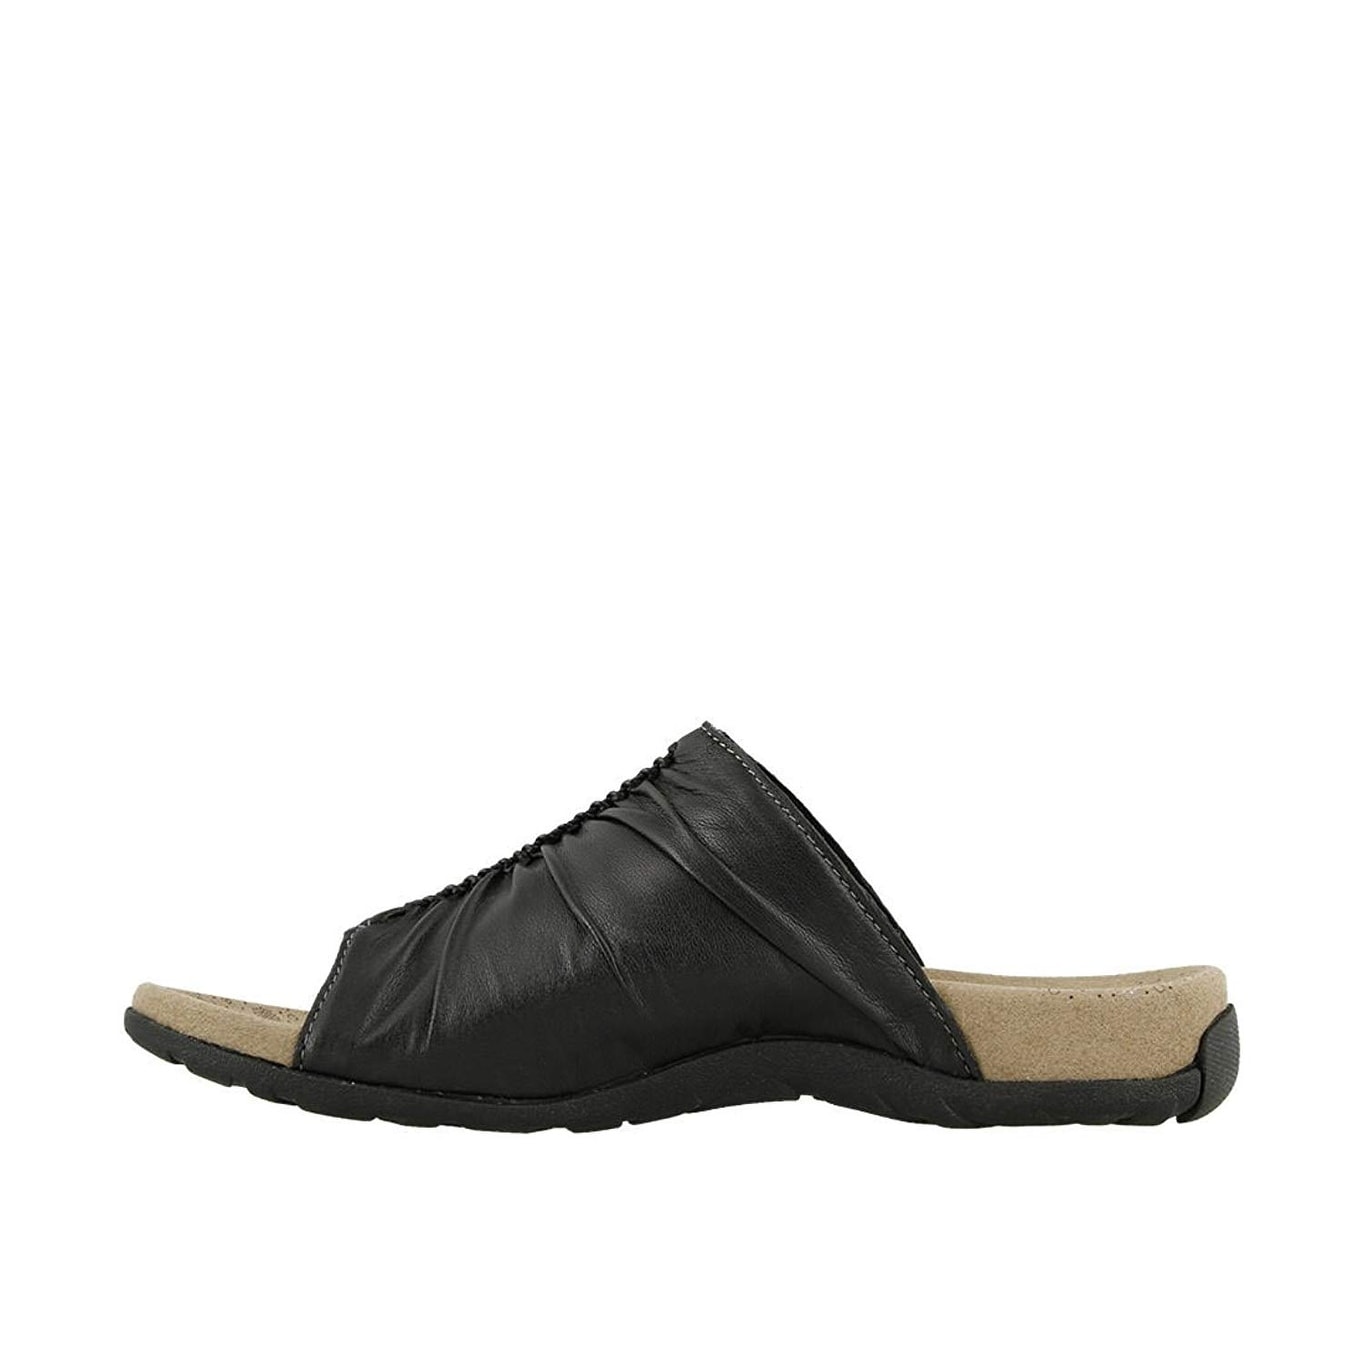 taos footwear women's gift 2 sandal